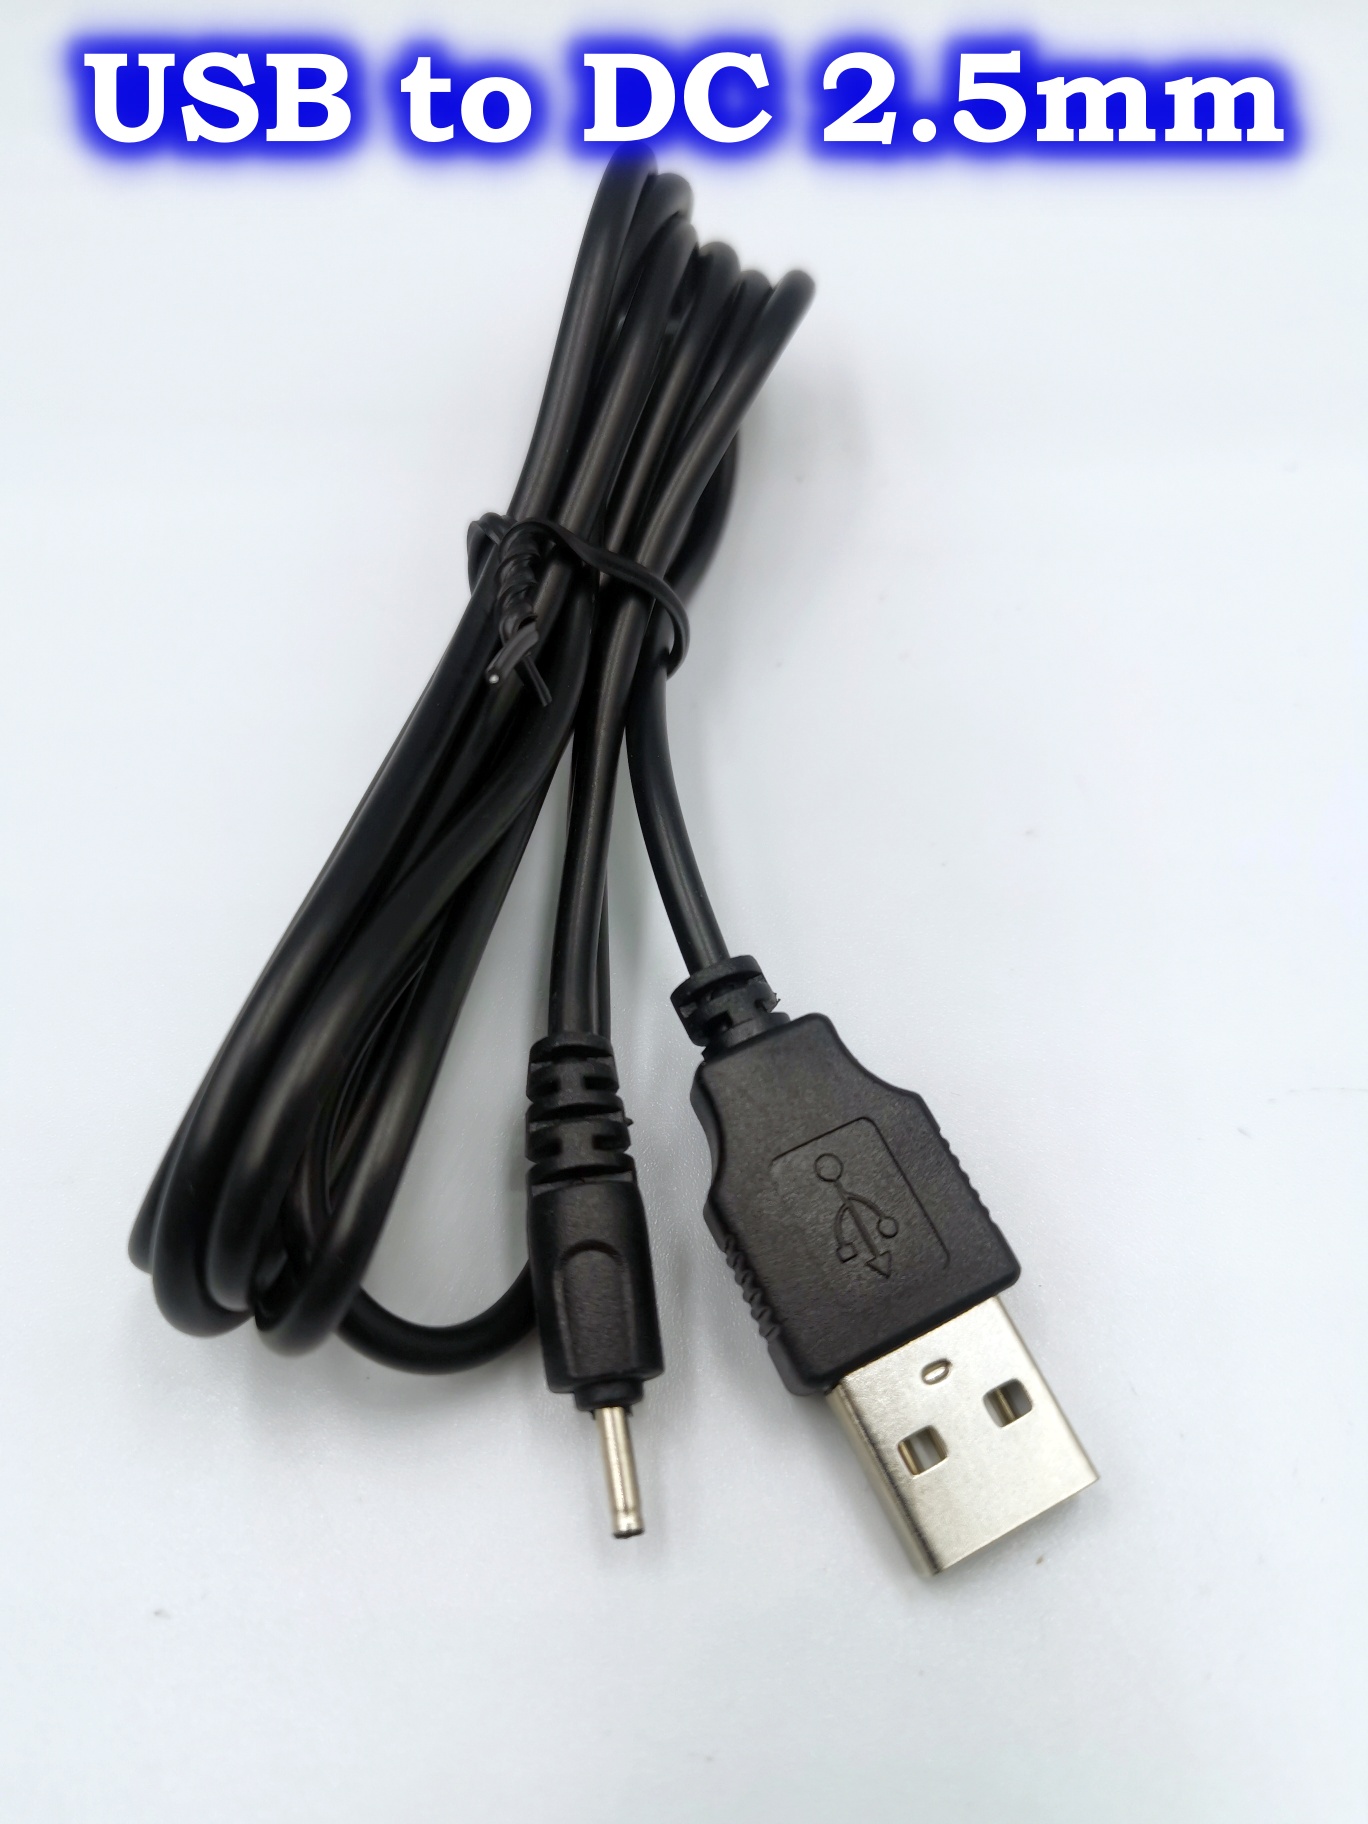 สายชาร์จ USB to DC 2.5mm USB to DC 3.5mm USB to DC 5.5mm สาย USB แปลงเป็นแจ็ค DC 2.5mm DC3.5mm DC5.5mm ความยาว 1 เมตร